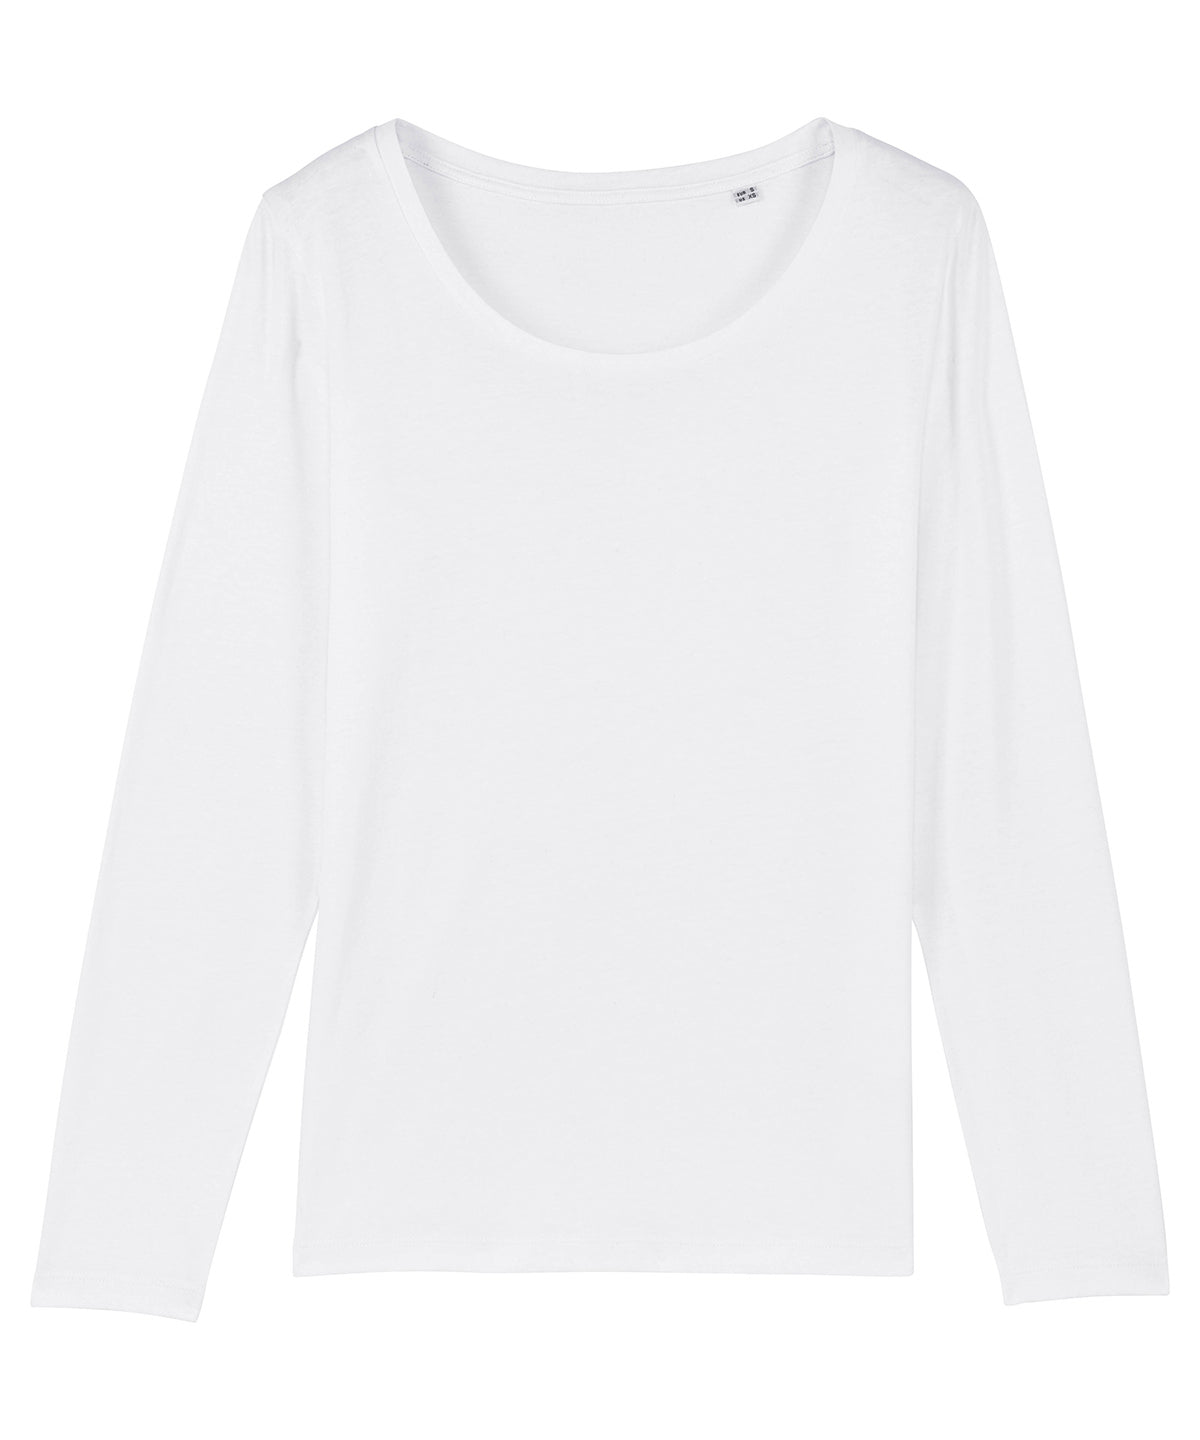 Essential Long Sleeve Lightweight Organic T-Shirt (Womens)